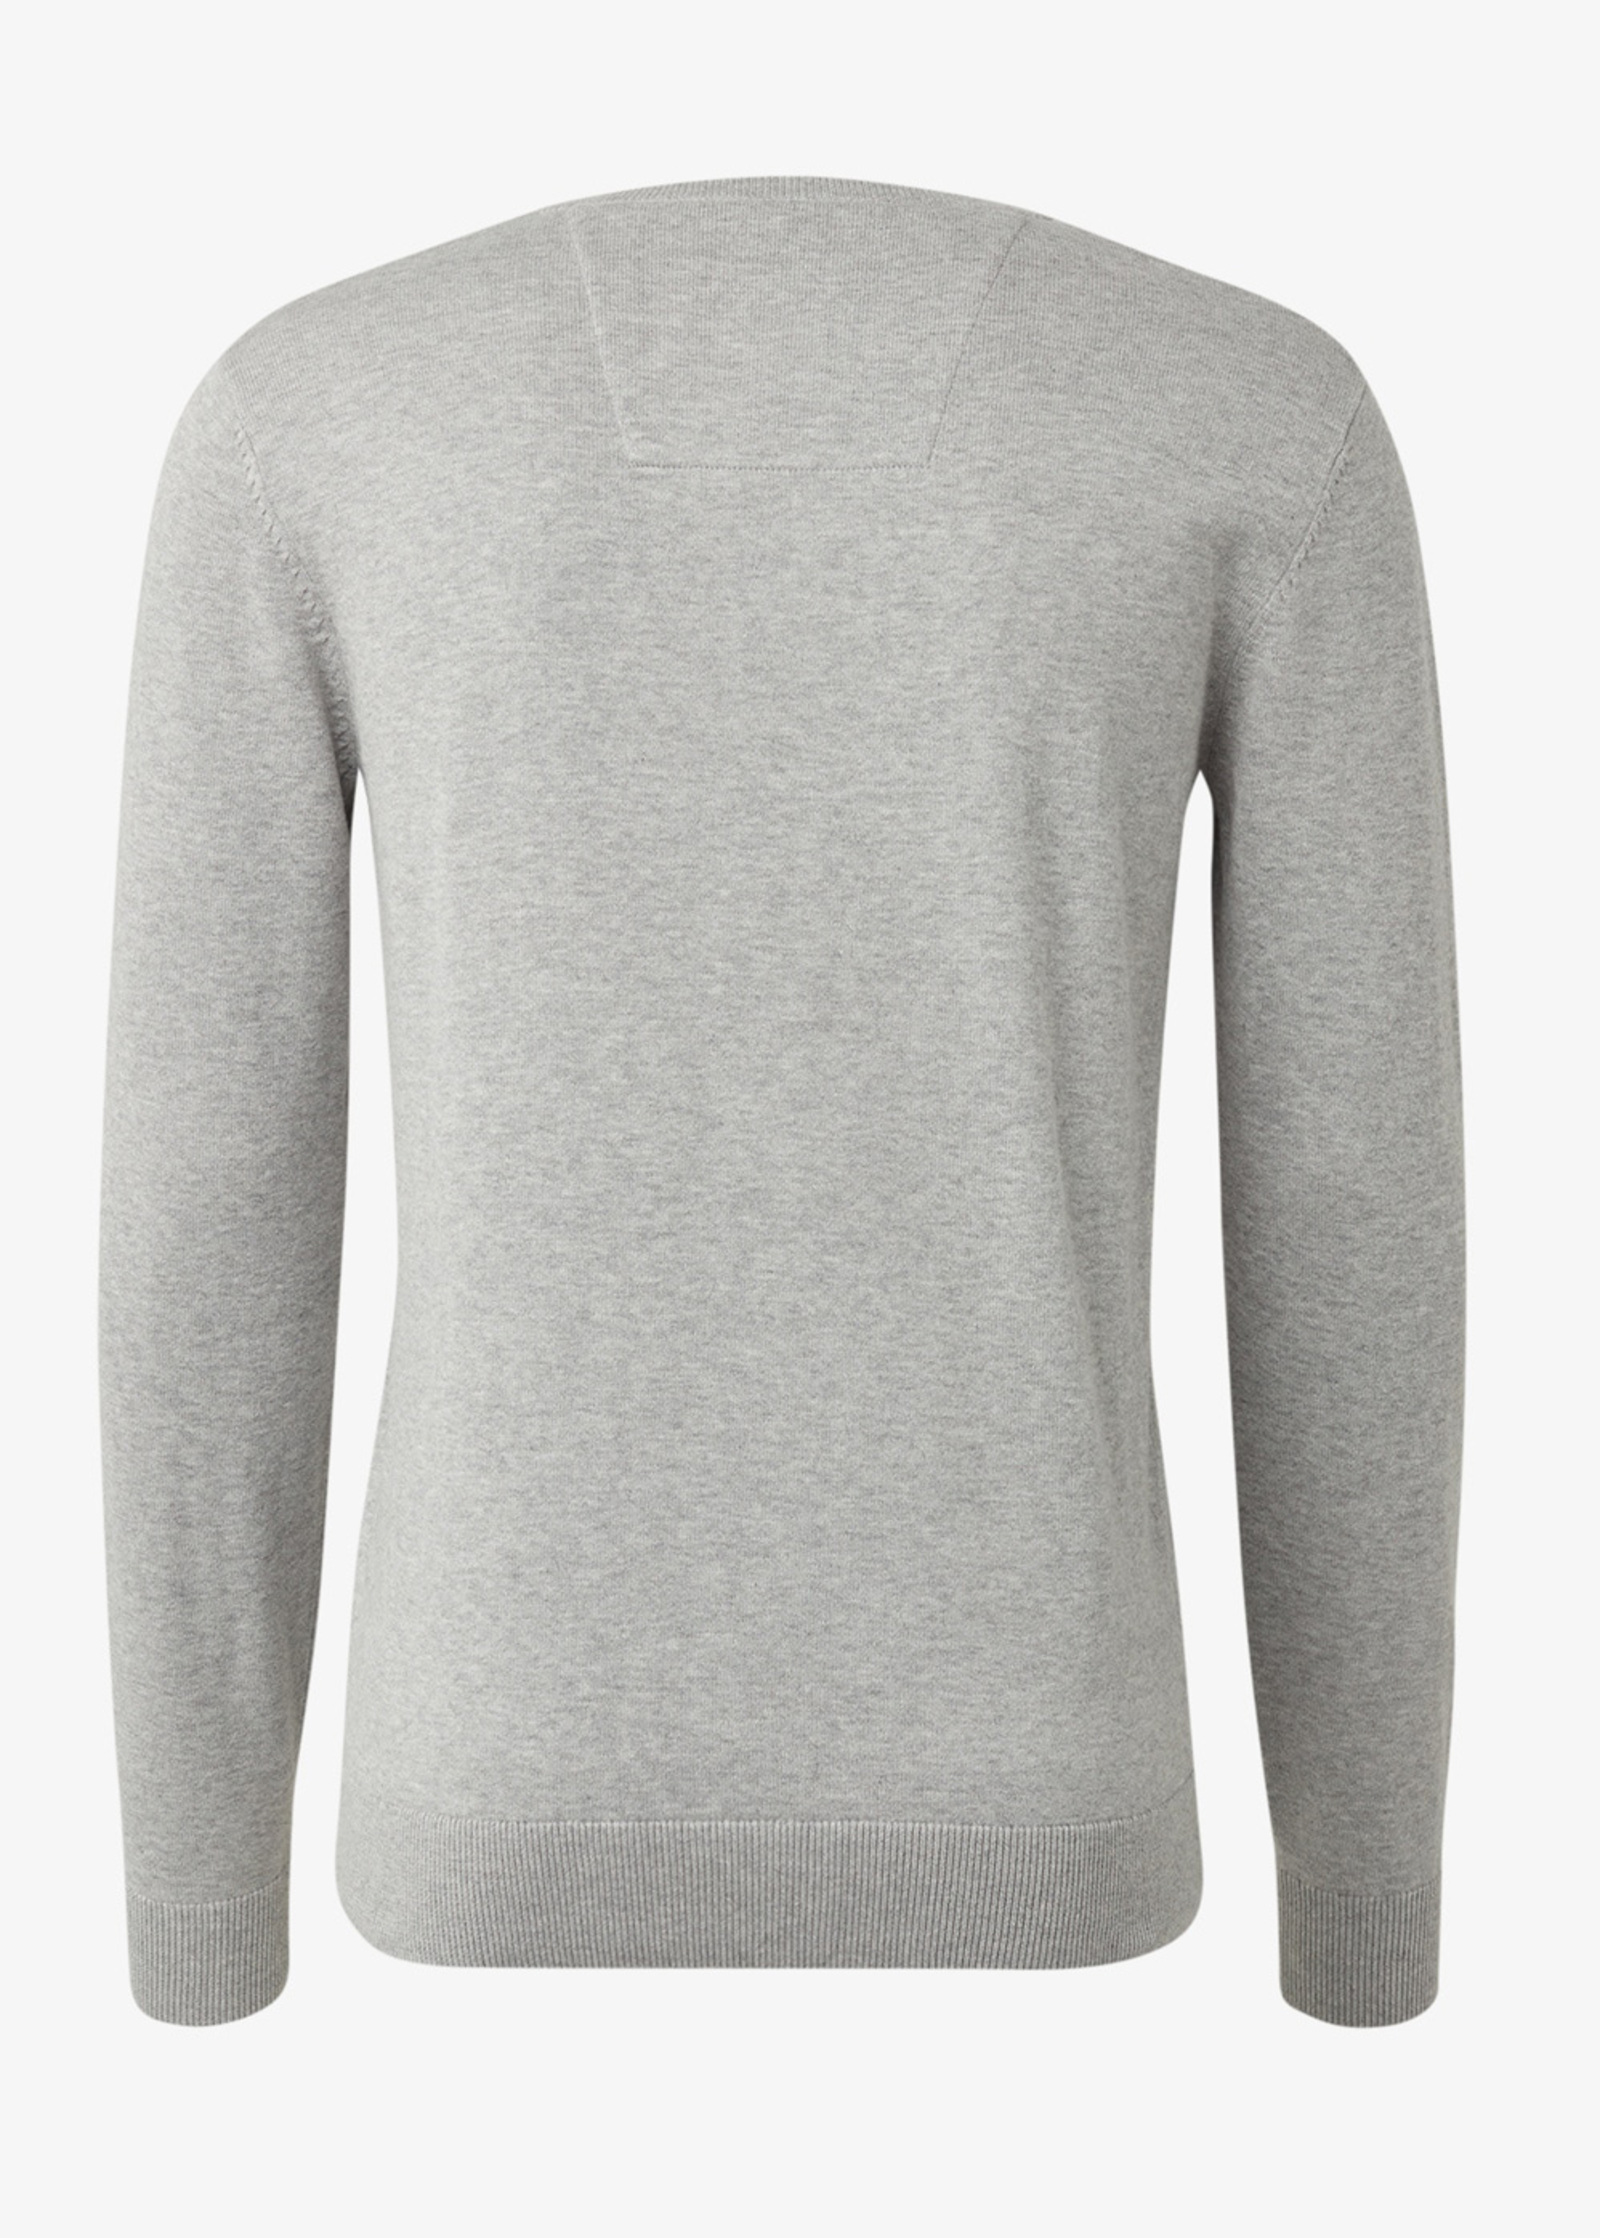 Grey Soft Melange S - Simple Jumper Light 1012819-14427 Tailor Tom Knitted Size